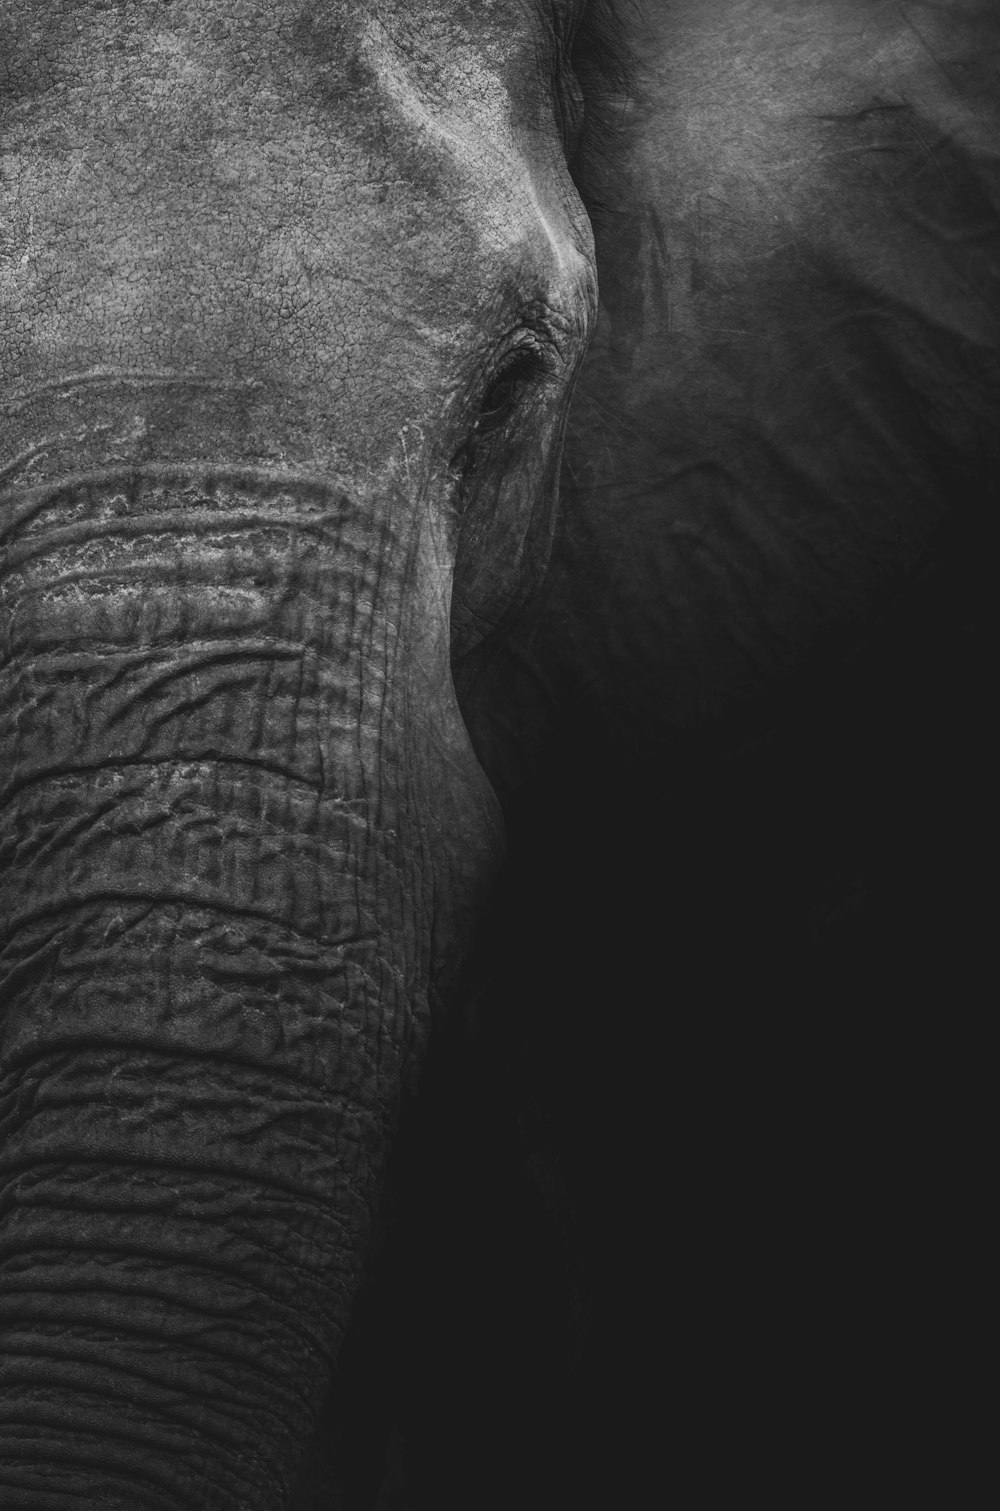 fotografia in scala di grigi dell'elefante